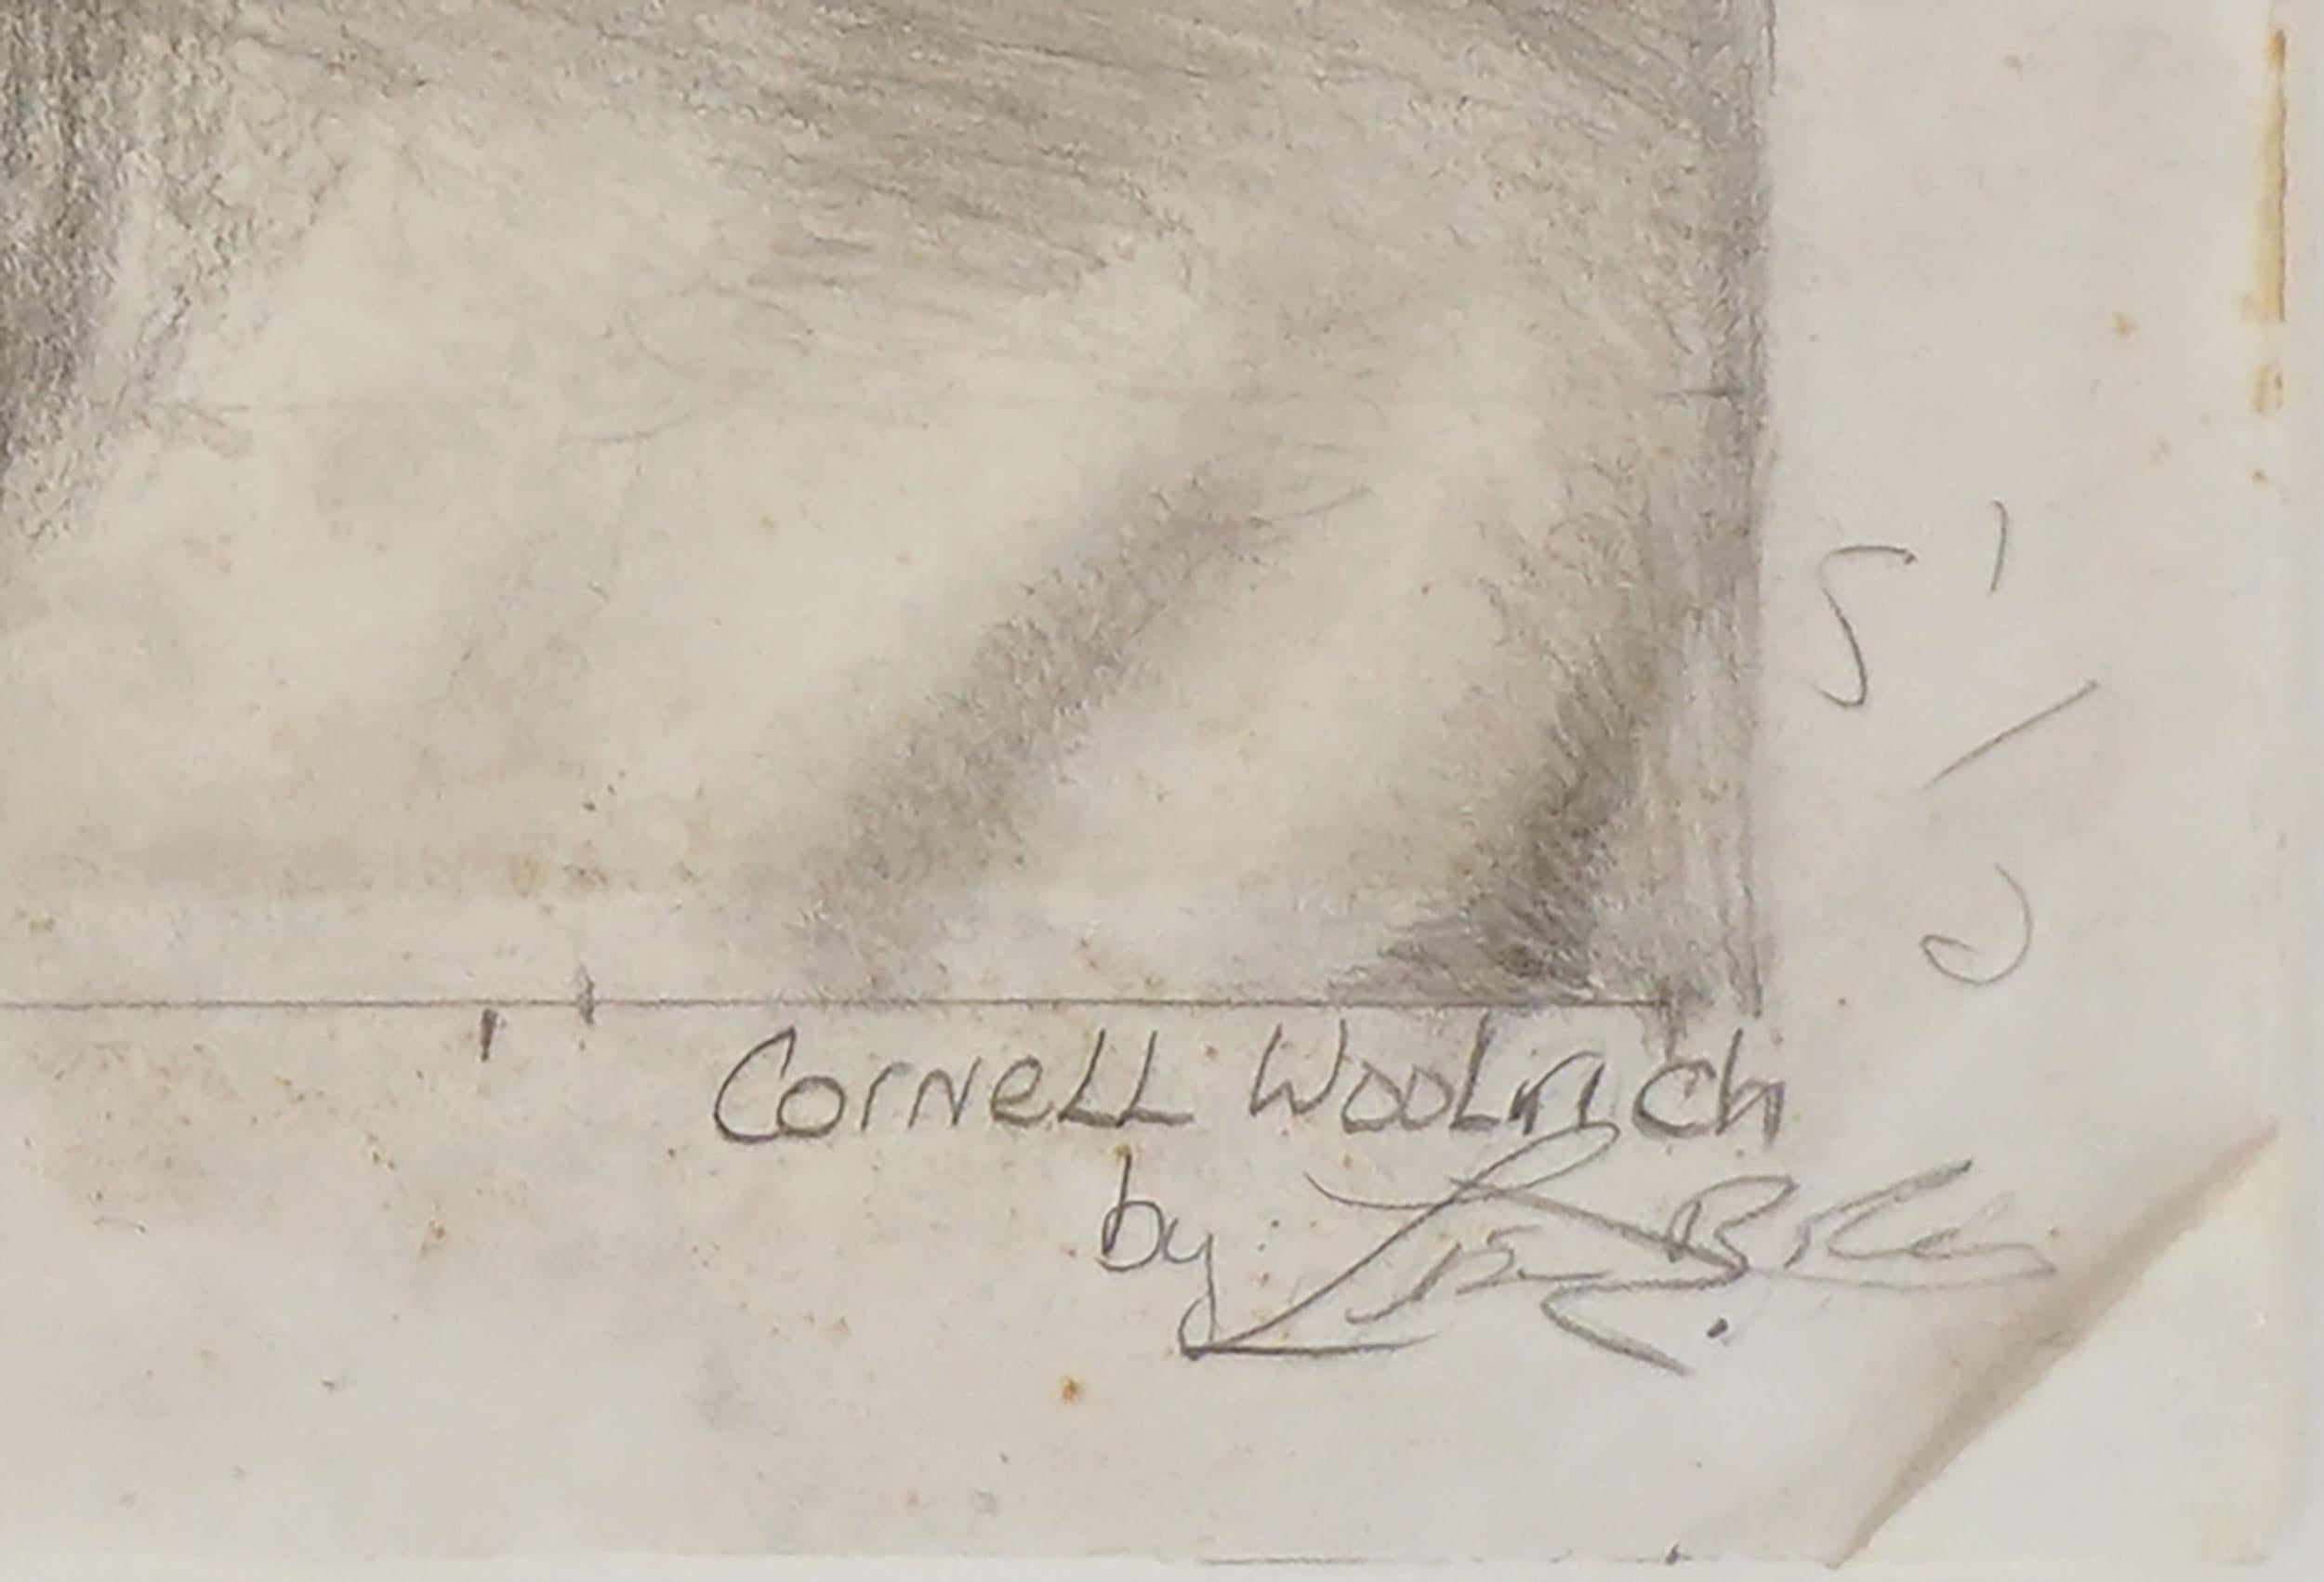 Vintage Portrait of 1940's Noir Writer Cornell Woolrich

Pencil portrait of famous 1930's 40's noir/crime writer Cornell George Hopley-Woolrich, circa 1980. Cornell George Hopley-Woolrich is one of America’s best crime and noir writers who sometimes